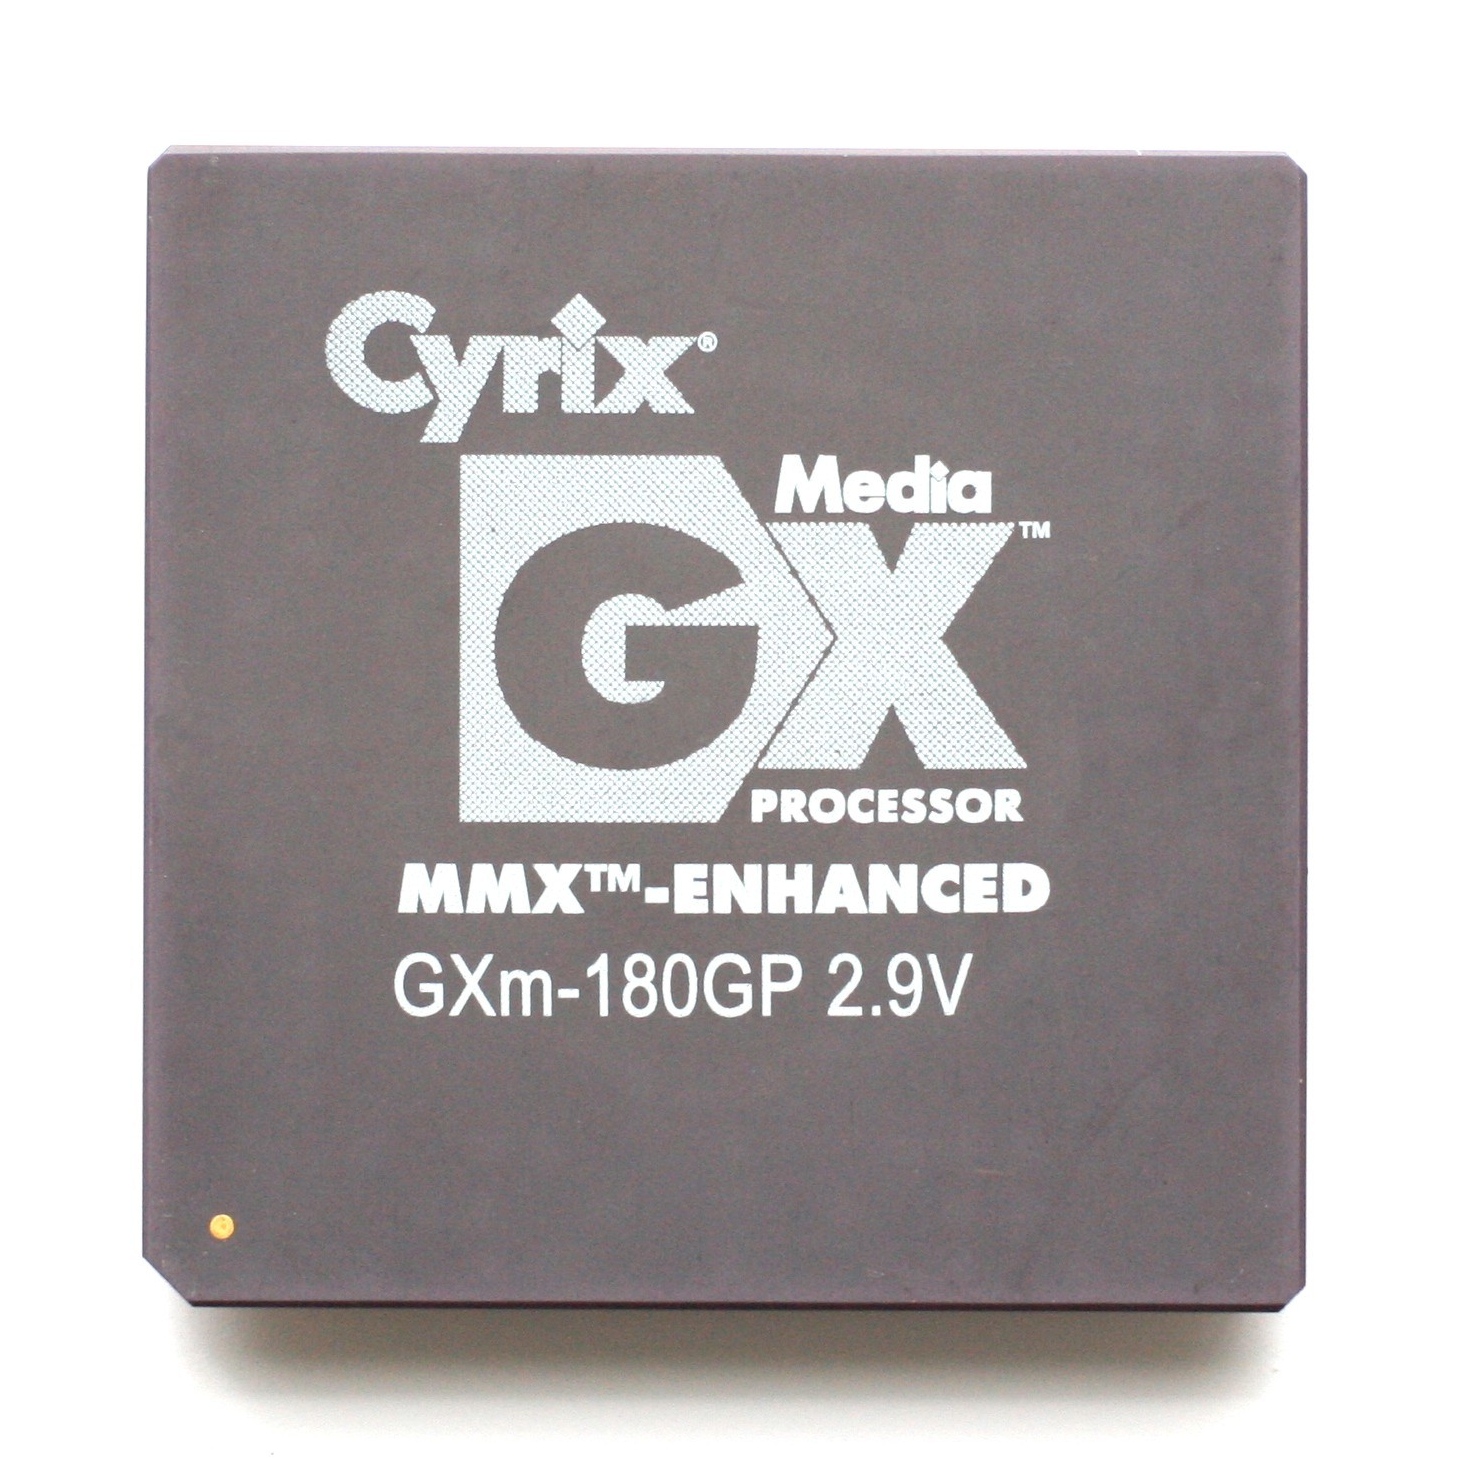 cyrix processors history